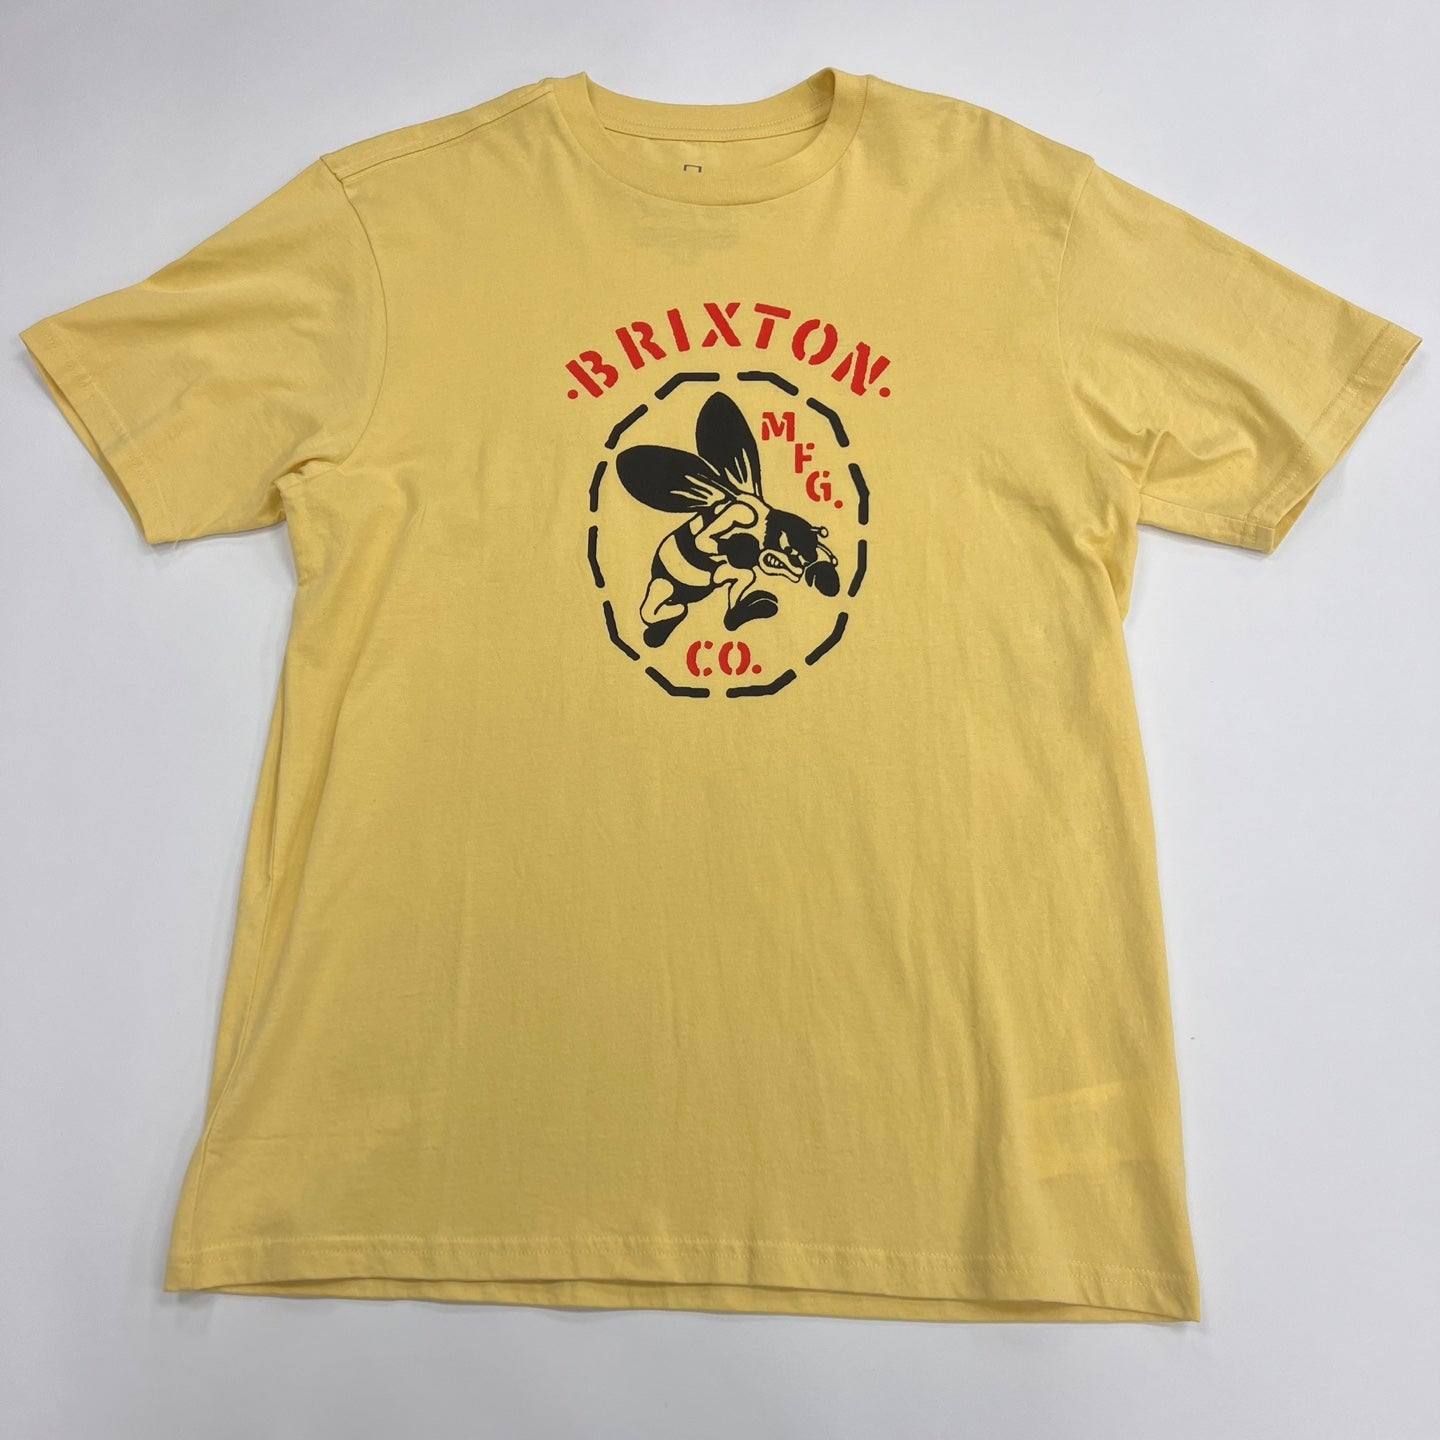 BRIXTON Men's Reeder Graphic T-Shirt